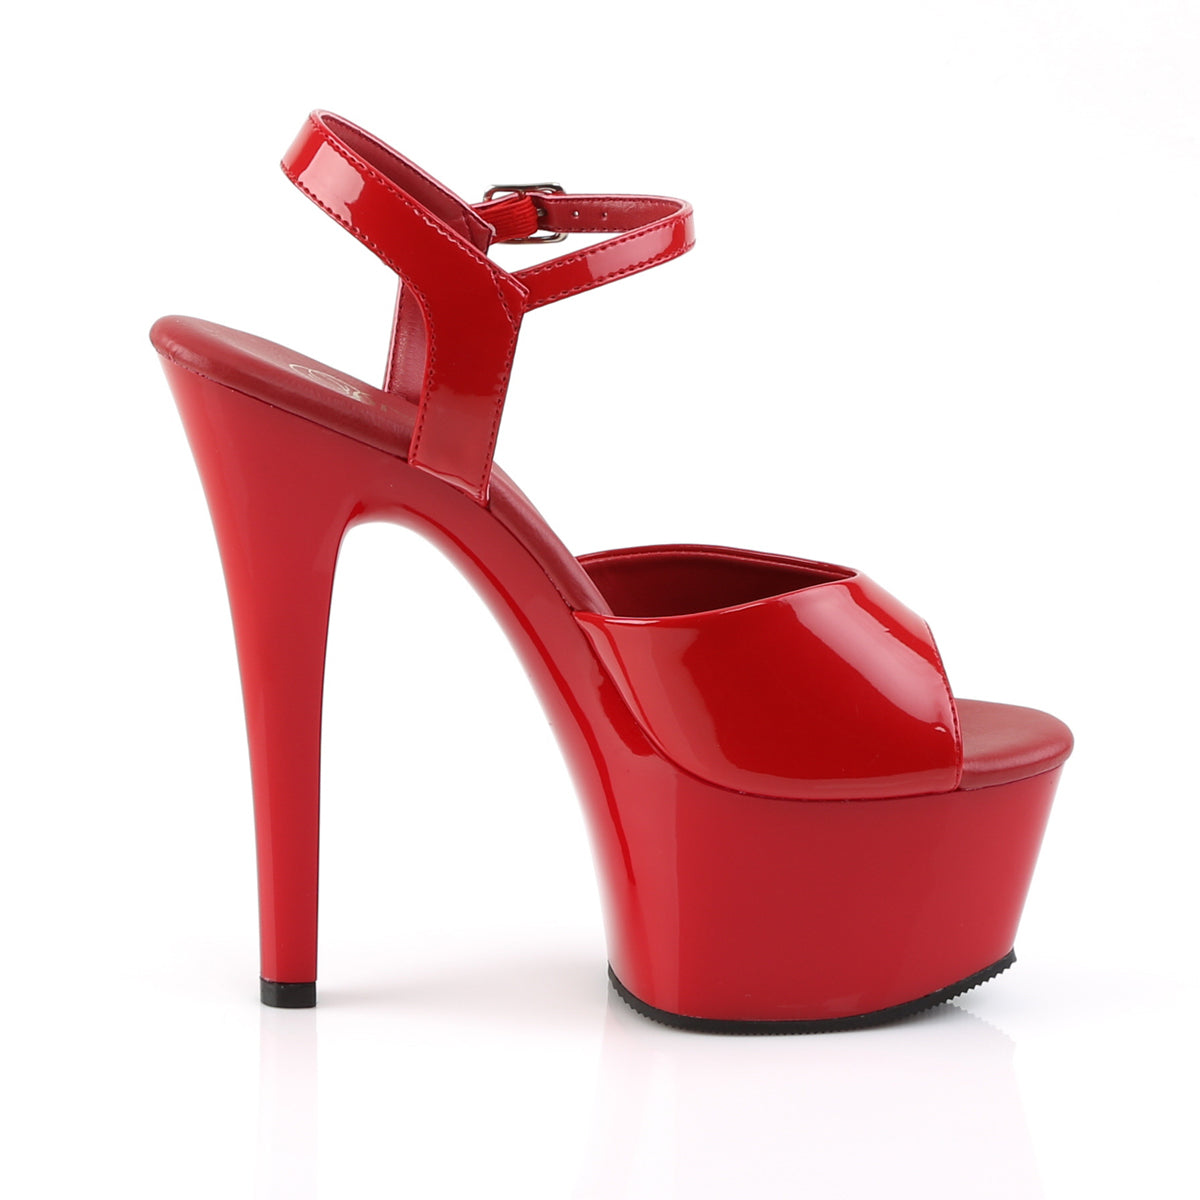 Pleaser Sandali da donna ASPIRE-609 Pat / rosso rosso / rosso